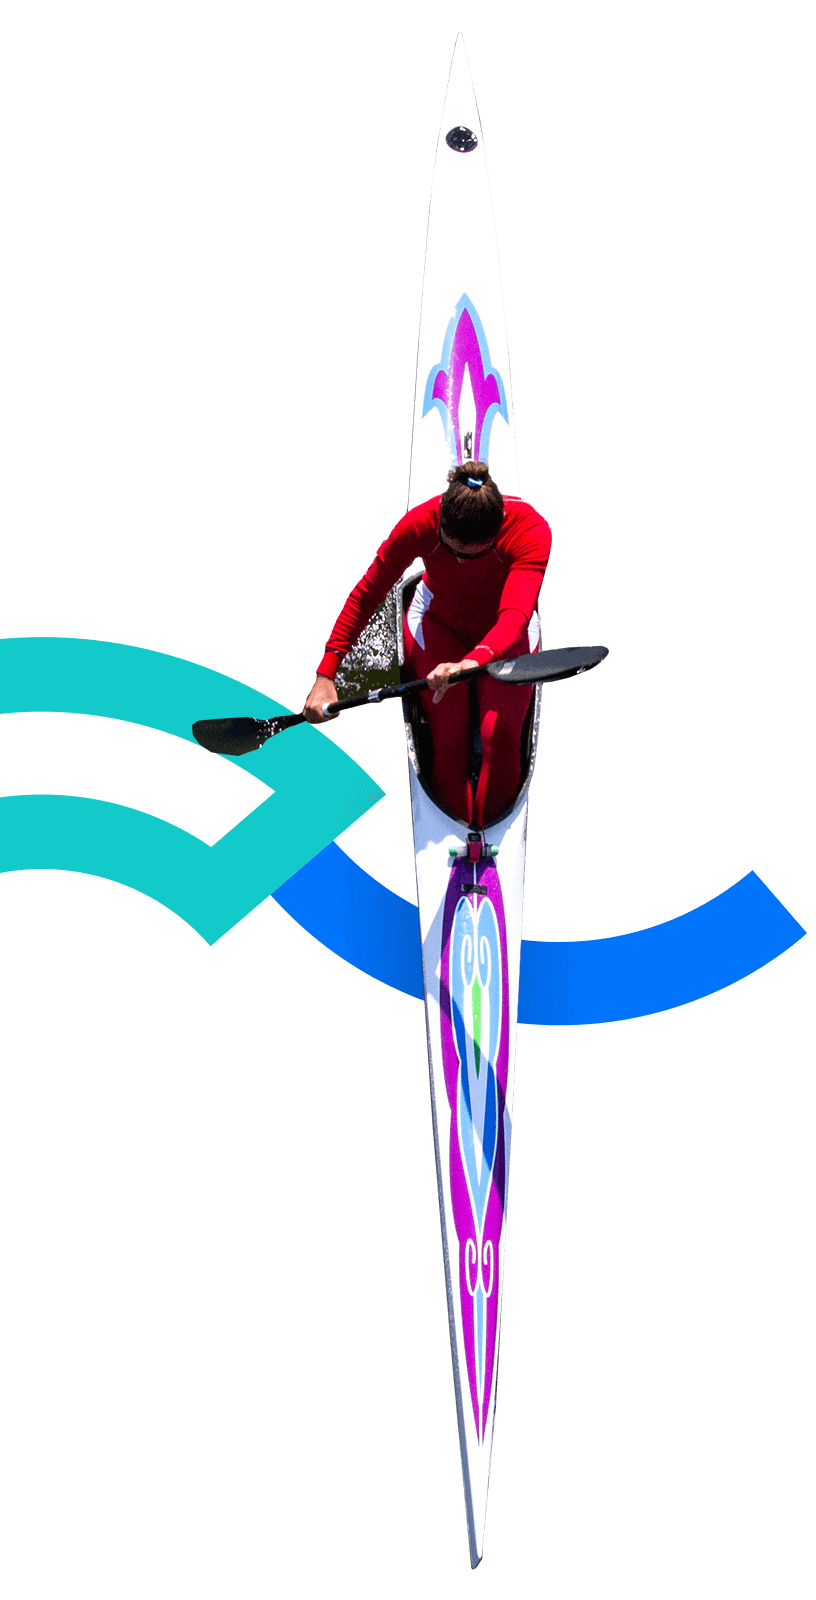 En la foto, se aprecia una vista cenital de una atleta sentada sobre un kayak. Su vestimenta es roja y tripula con una pala de dos hojas. 